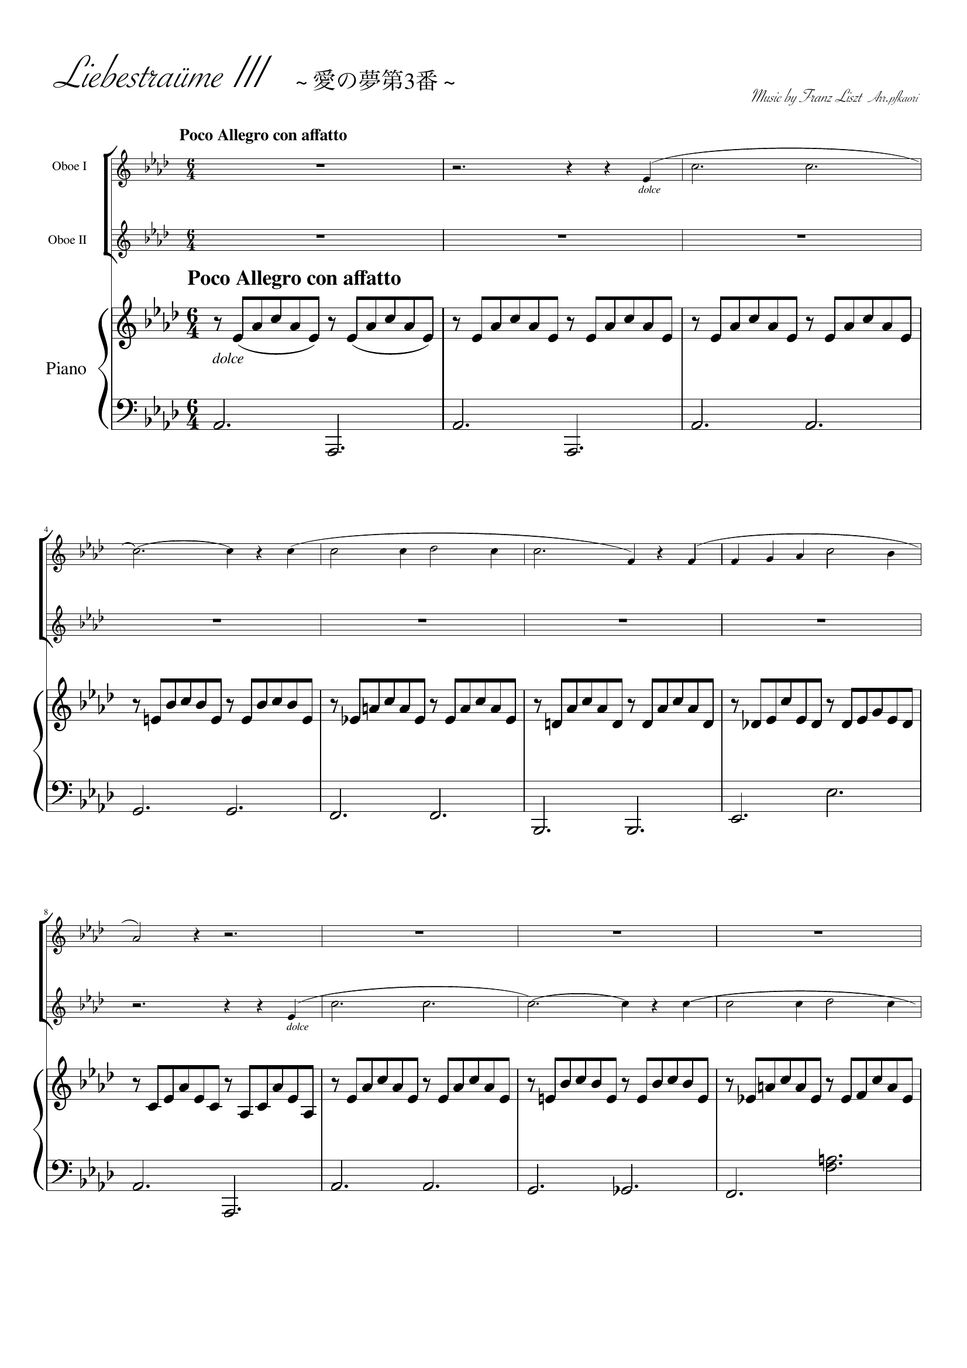 Franz Liszt - Liebestraum No. 3 (Oboe duo/Piano trio) by pfkaori